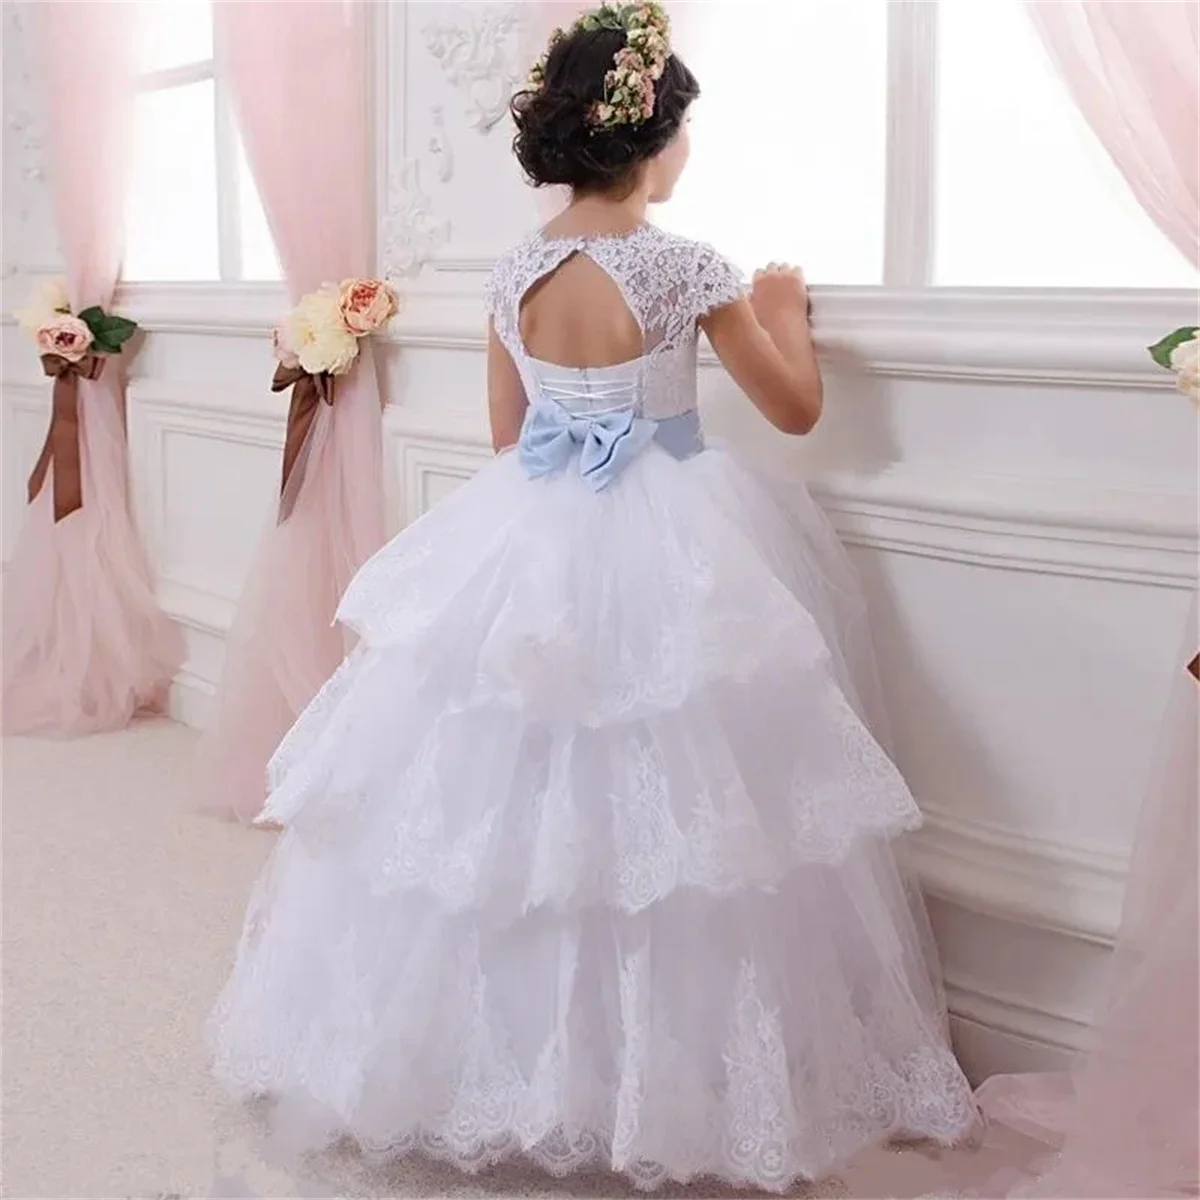 Платье в цветочек для девочки, белый пышный тюль, кружевной пояс с бантом, свадебный цветок, первый детский евхаристический бал, первое платье